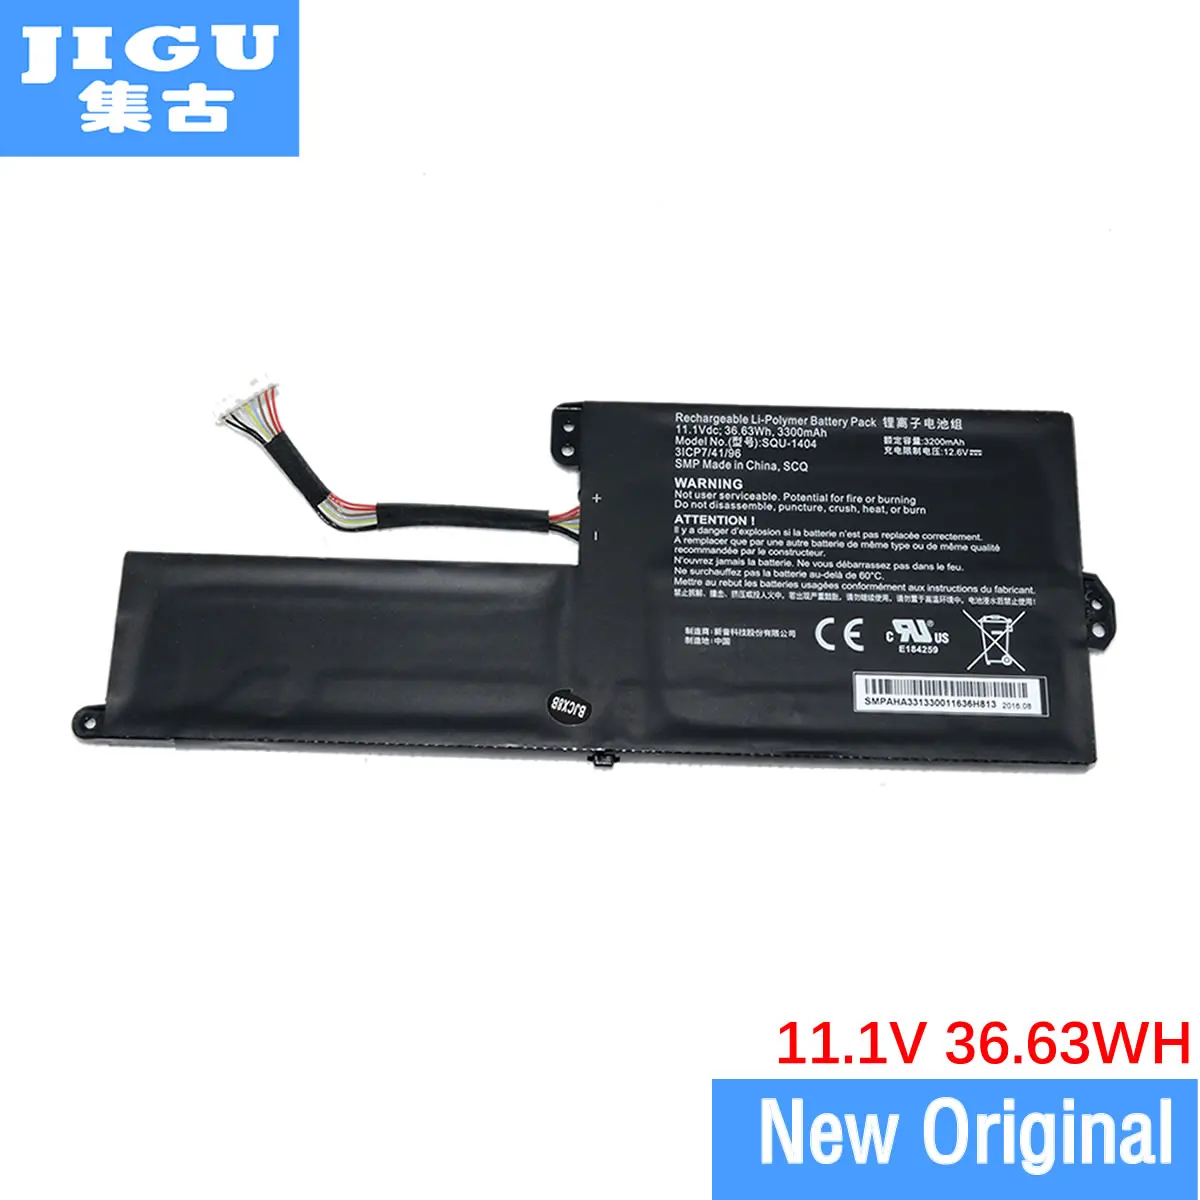 

JIGU Original laptop Battery 3ICP7/41/96 For ACER SQU-1404 11.1V 36.63WH